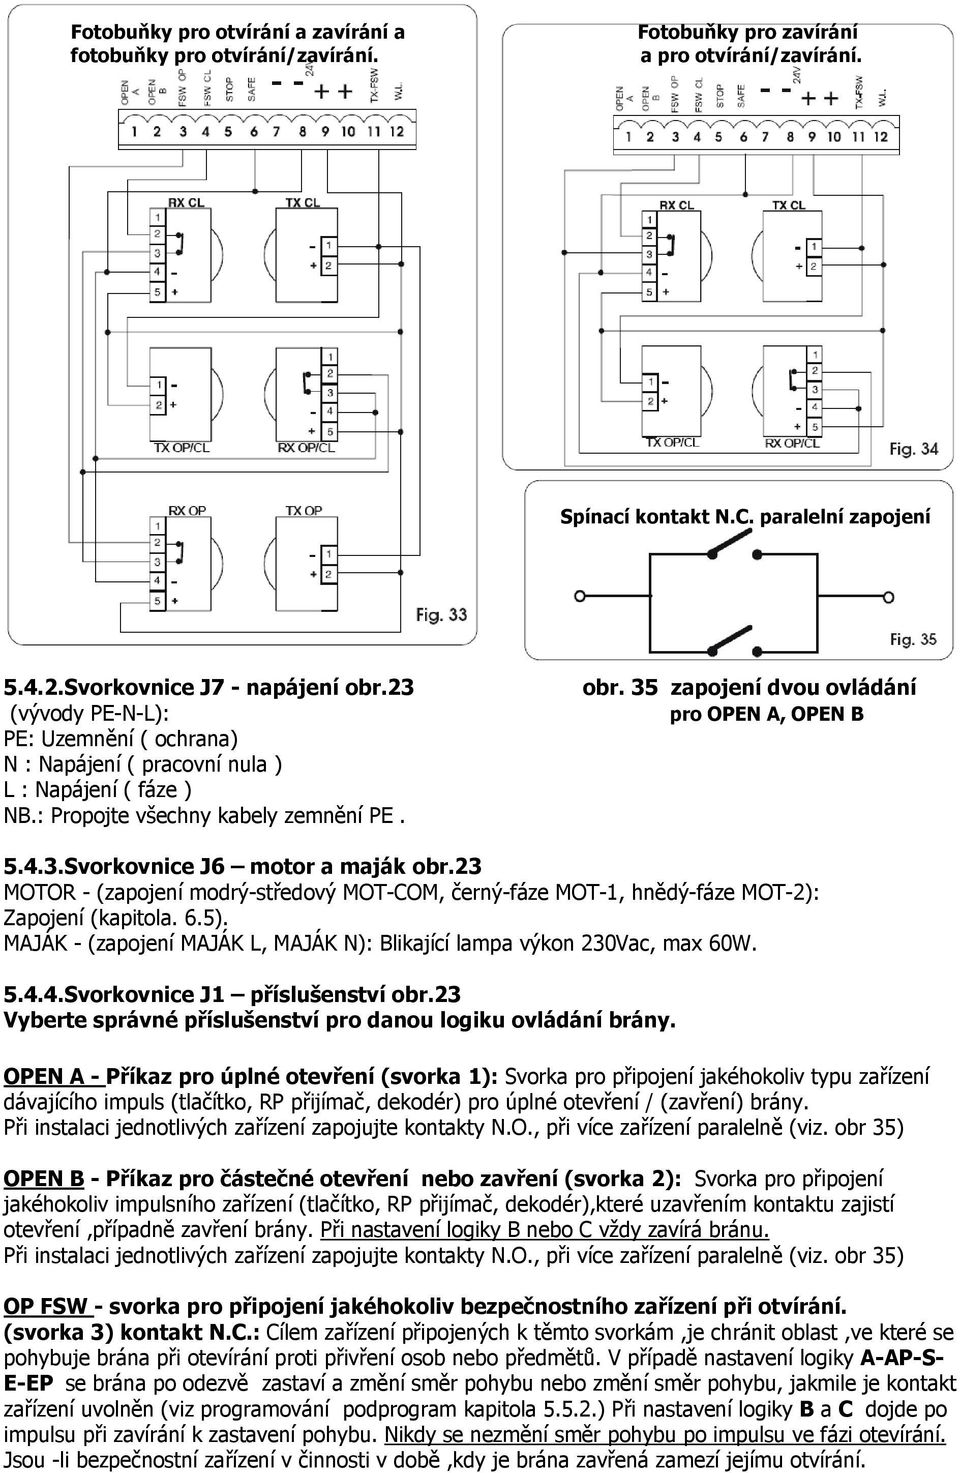 23 MOTOR - (zapojení modrý-středový MOT-COM, černý-fáze MOT-1, hnědý-fáze MOT-2): Zapojení (kapitola. 6.5). MAJÁK - (zapojení MAJÁK L, MAJÁK N): Blikající lampa výkon 230Vac, max 60W. 5.4.